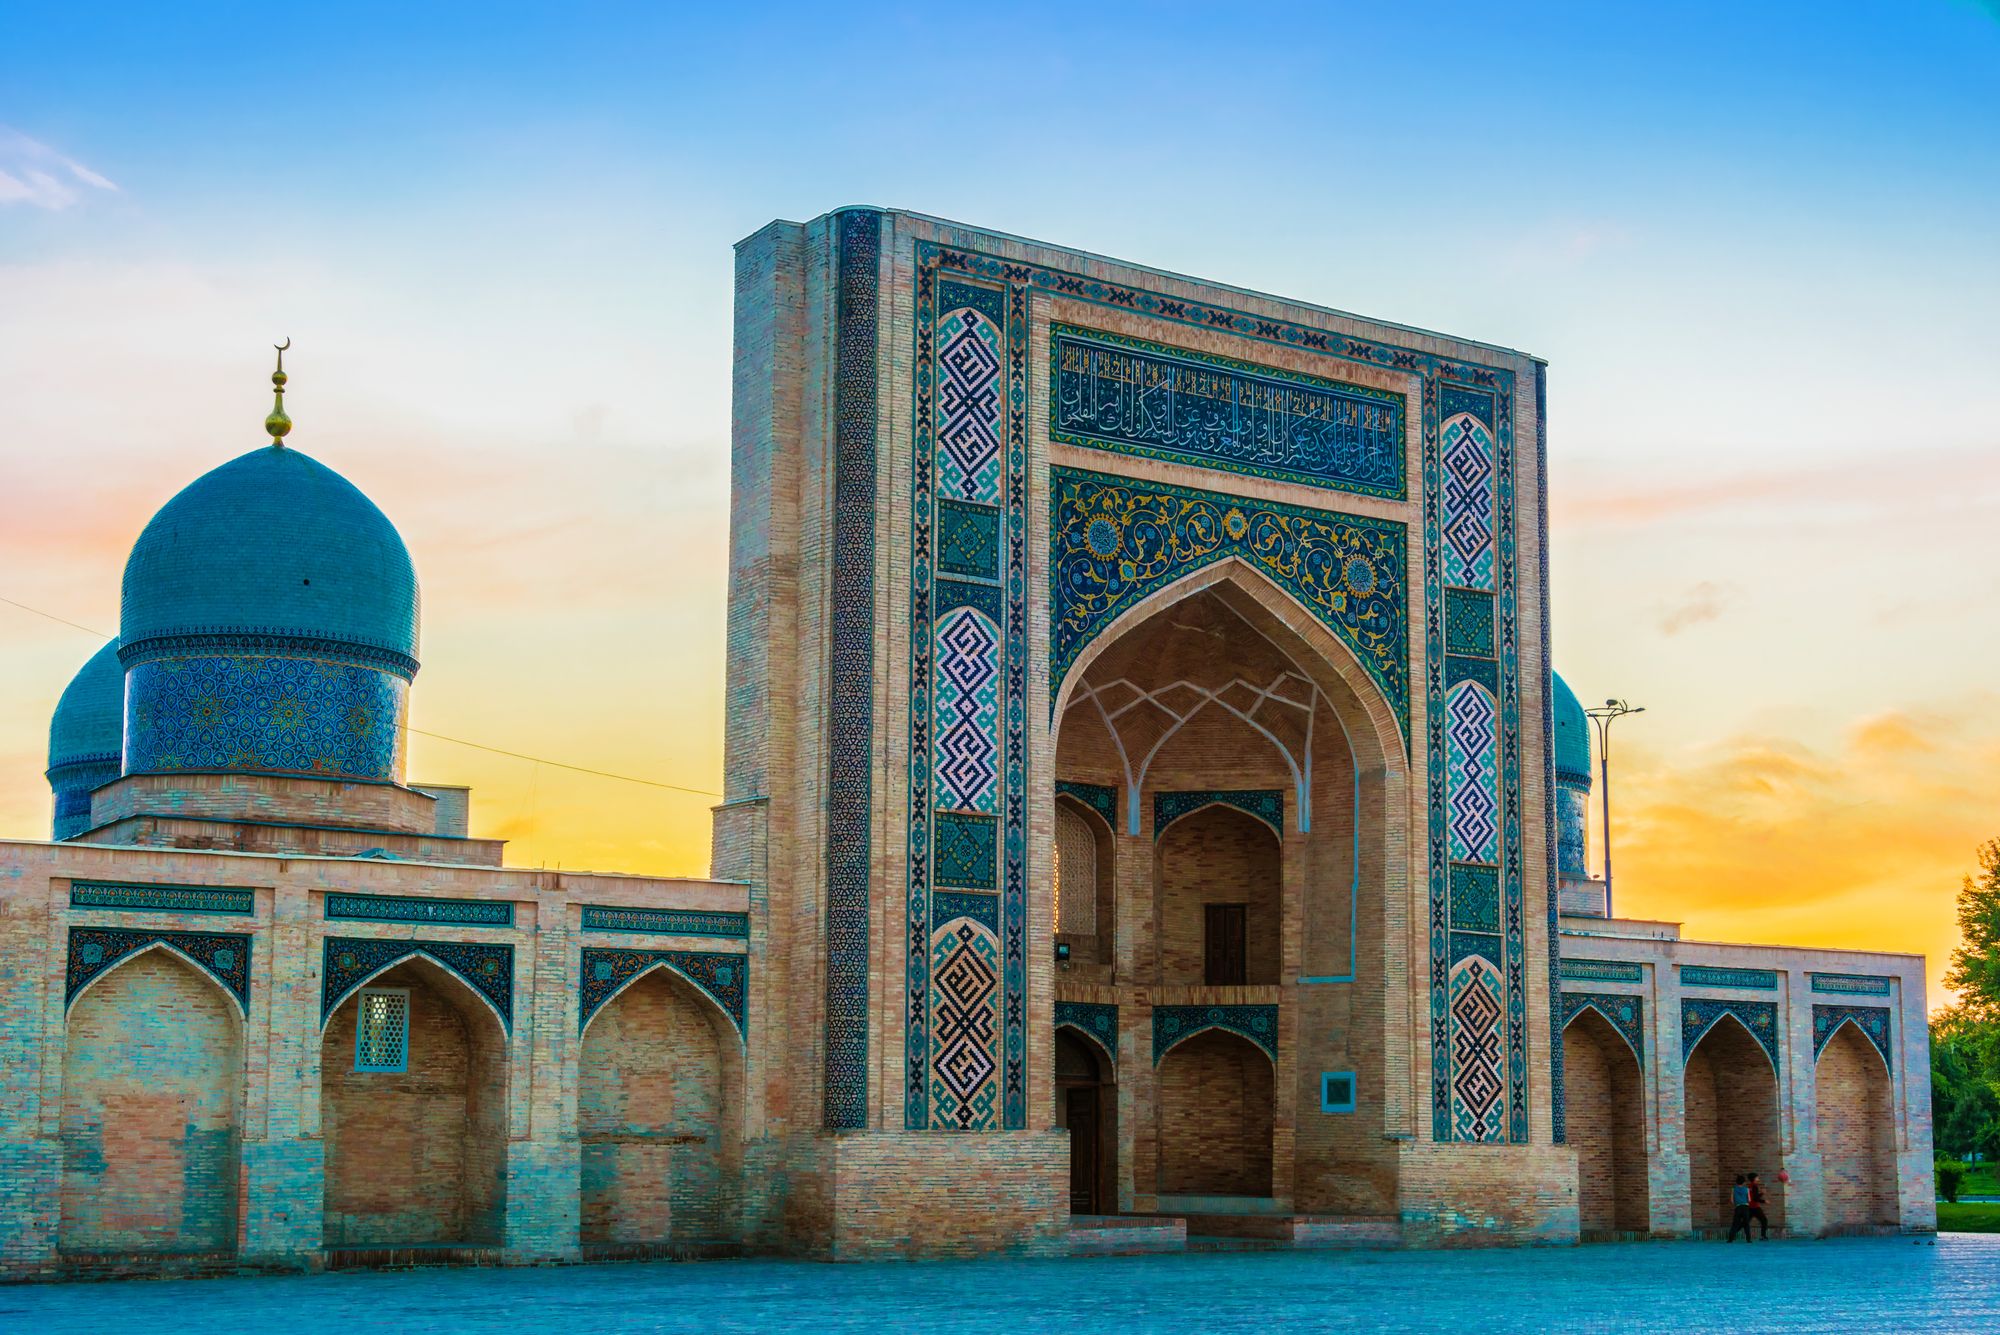 Hazrat Imam Mosque